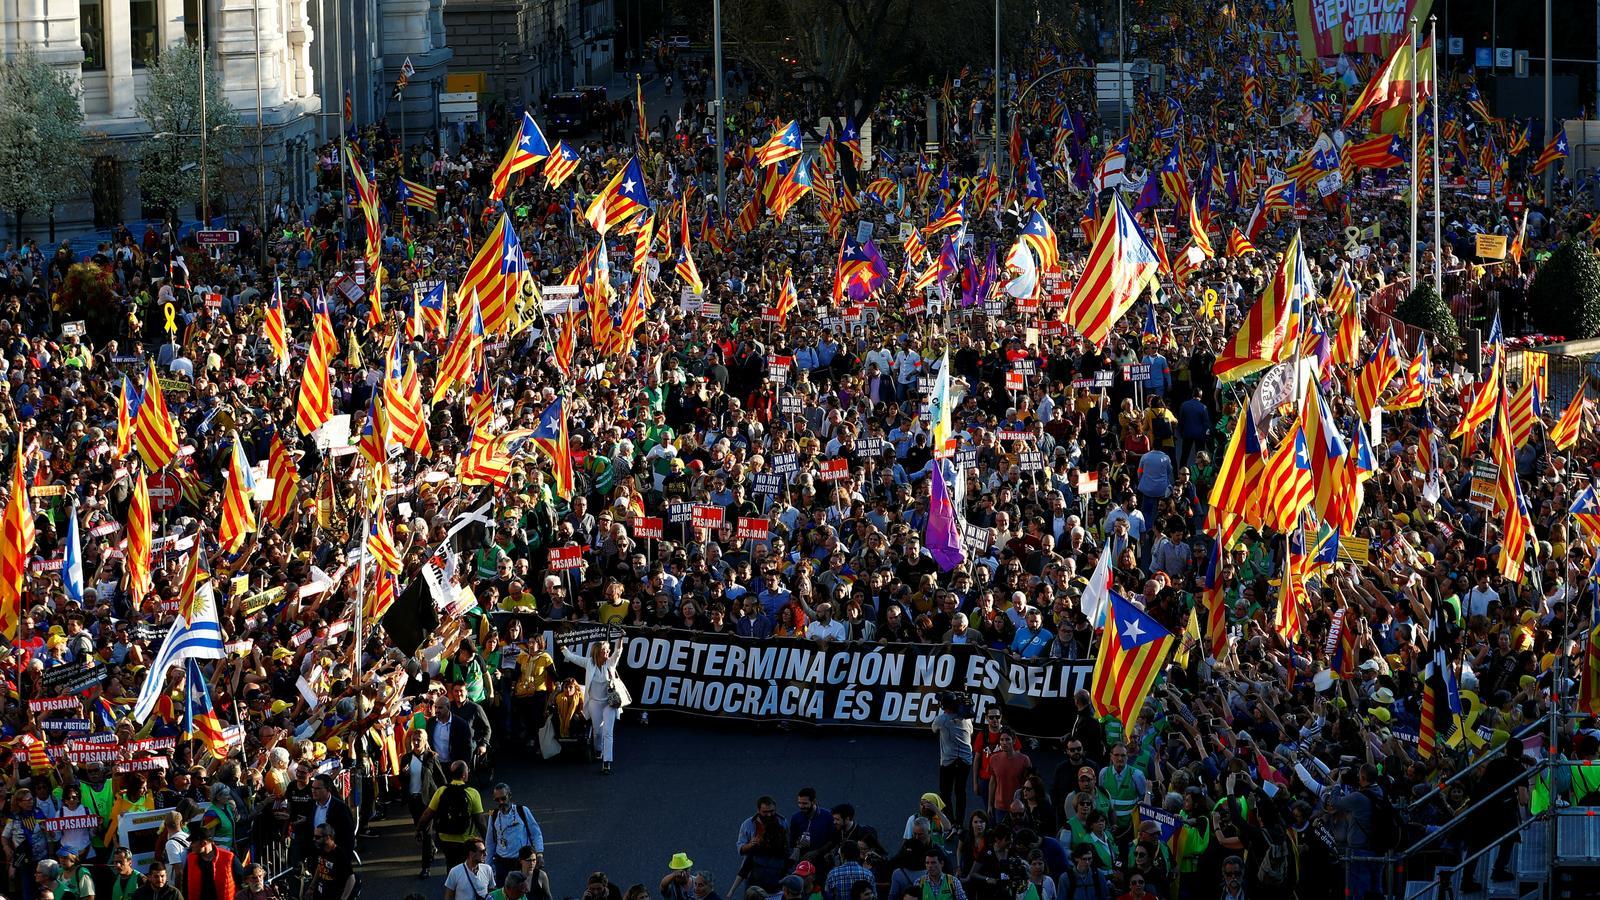 TV3 emetrà el 13 d'abril el programa compensatori per la manifestació sobiranista de Madrid